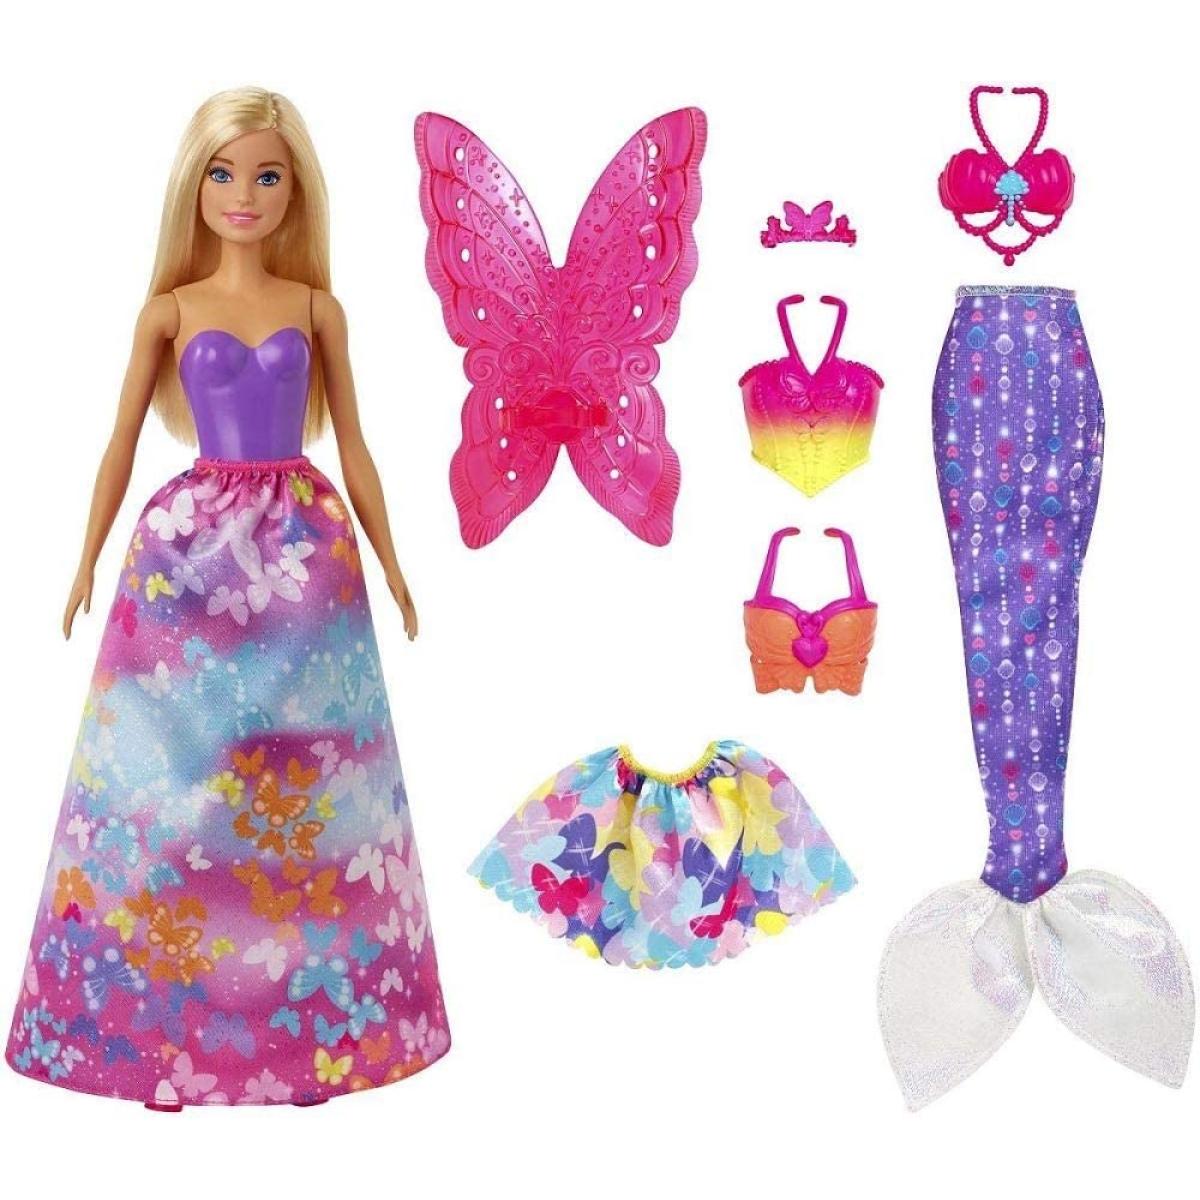 Poupées Barbie Barbie Dreamtopia poupée Papillons coffret 3-en-1 blonde avec trois tenues roses de princesse, sirène et fée, jouet pour enfant, GJK40